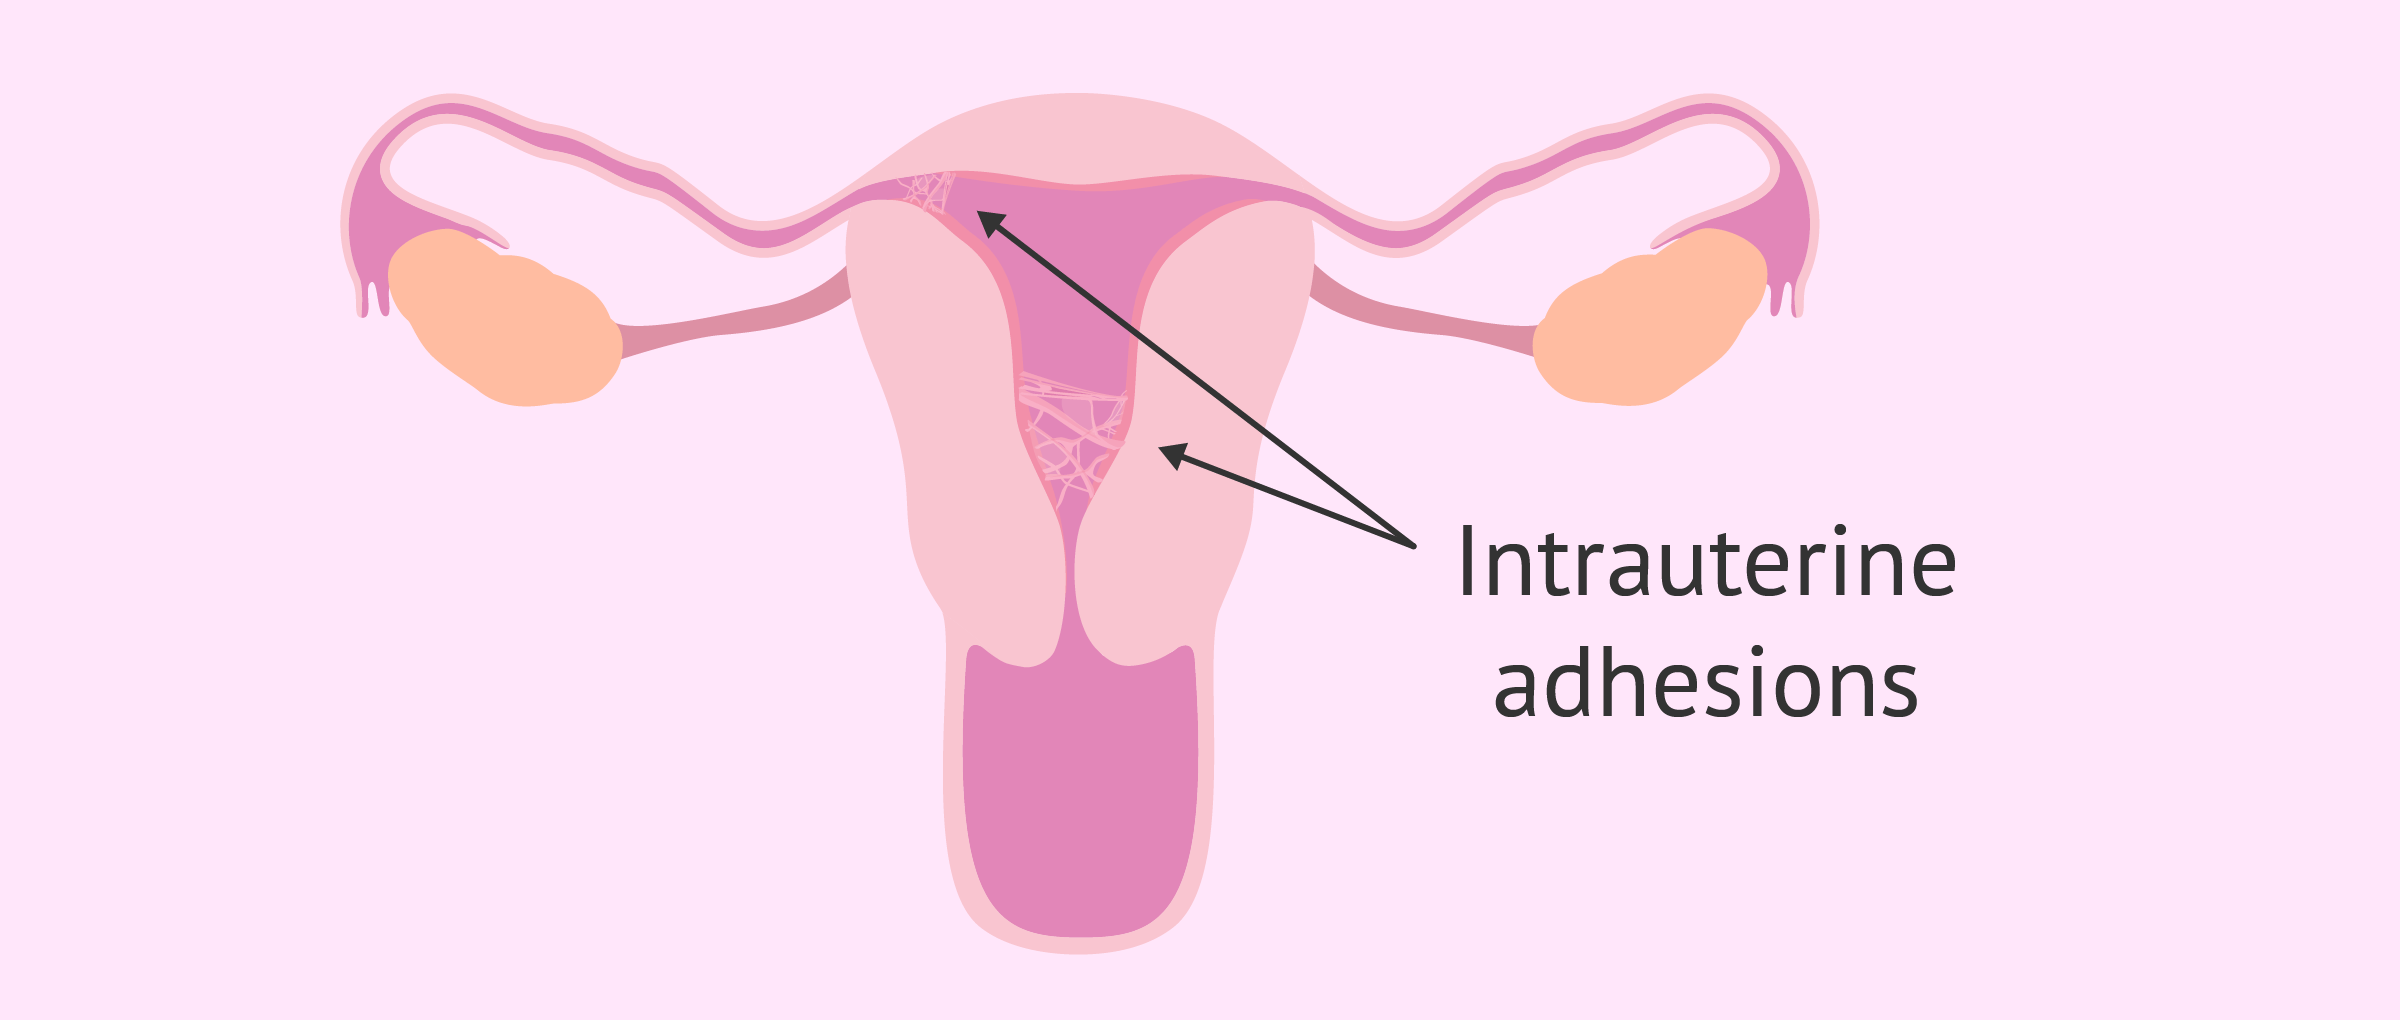 Pelvic or uterine adhesions